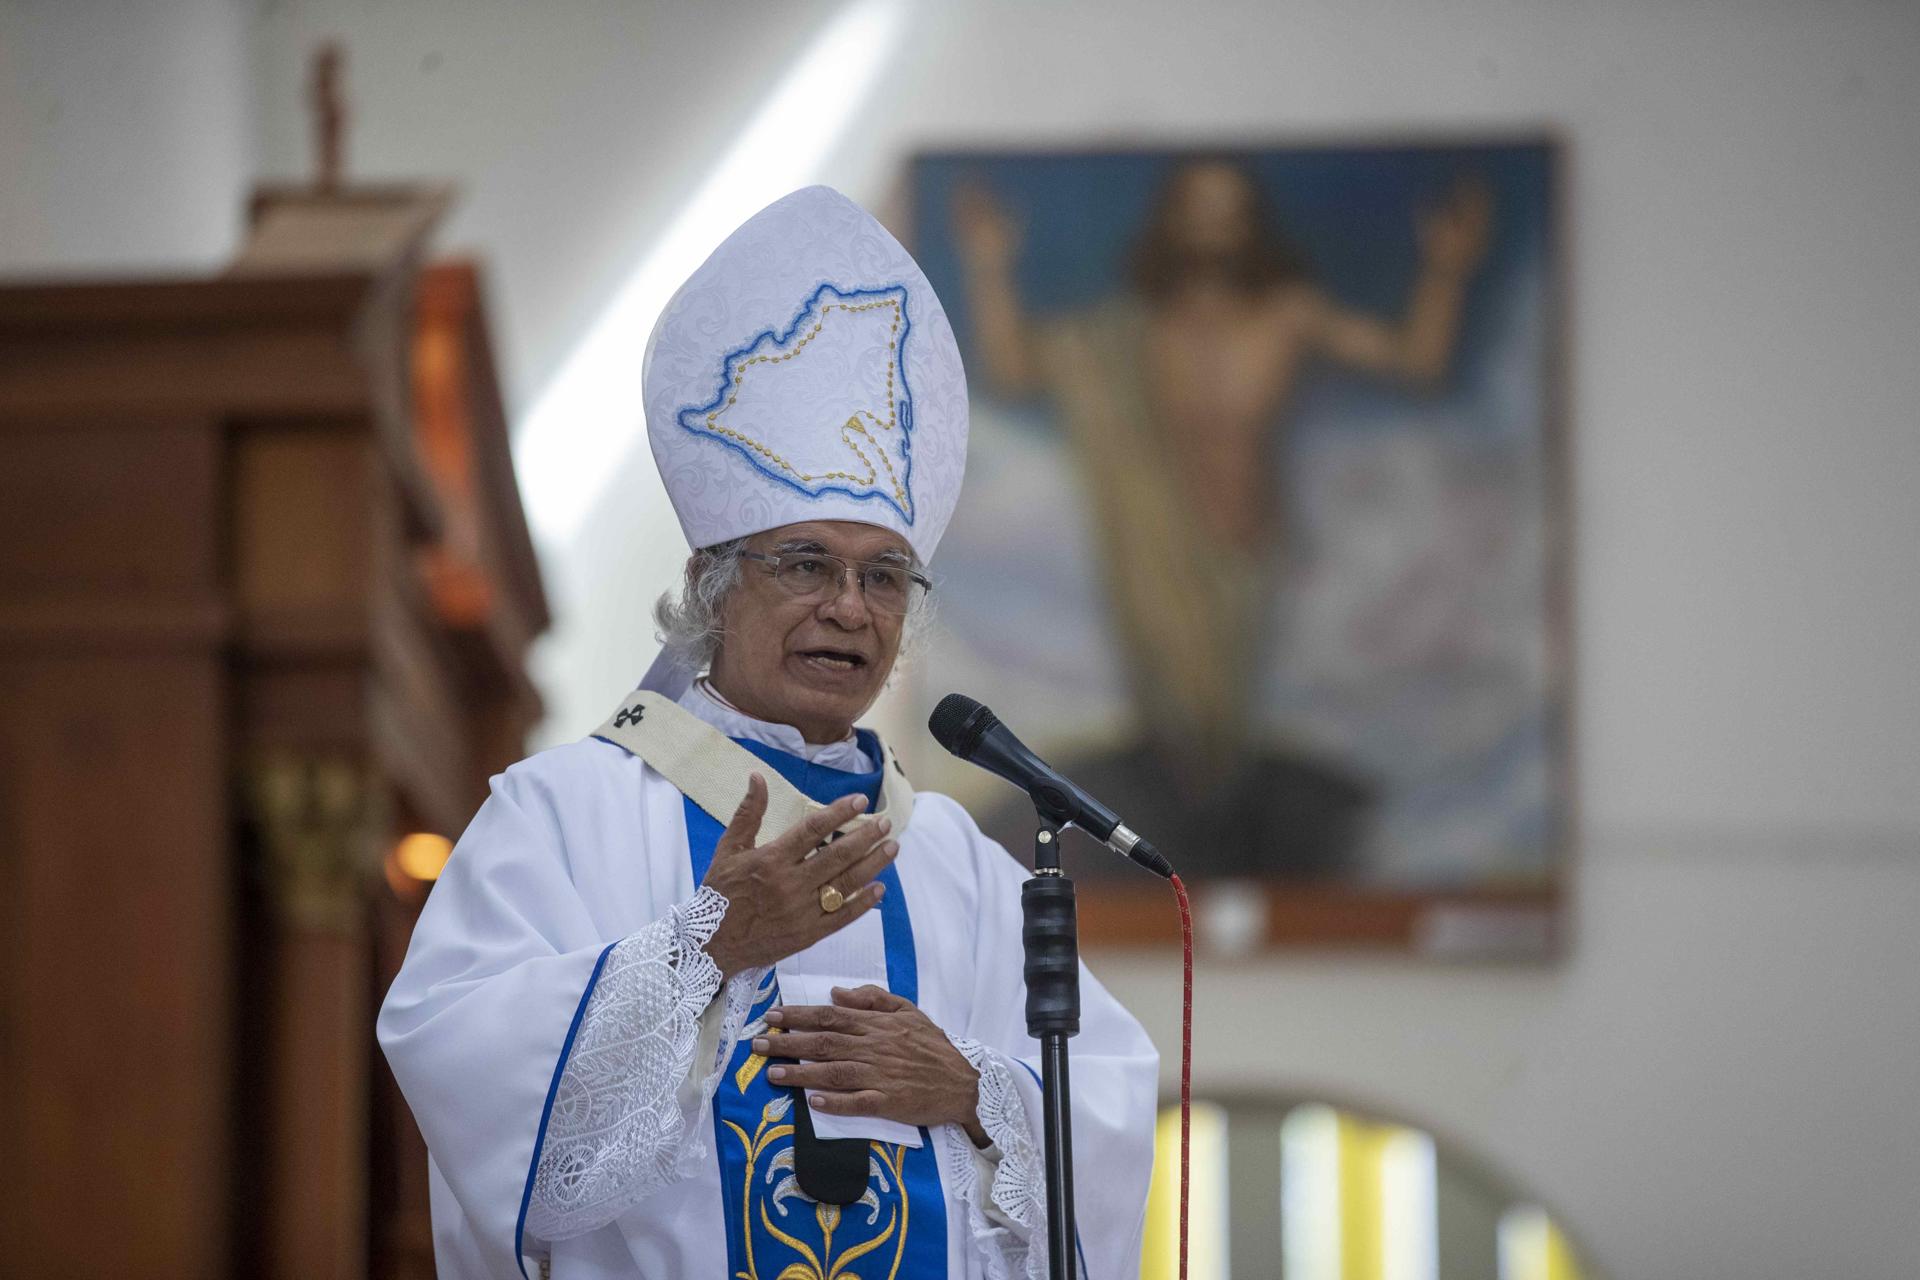 La Policía de Nicaragua acusó de "lavar dinero" a la Iglesia católica nicaragüense